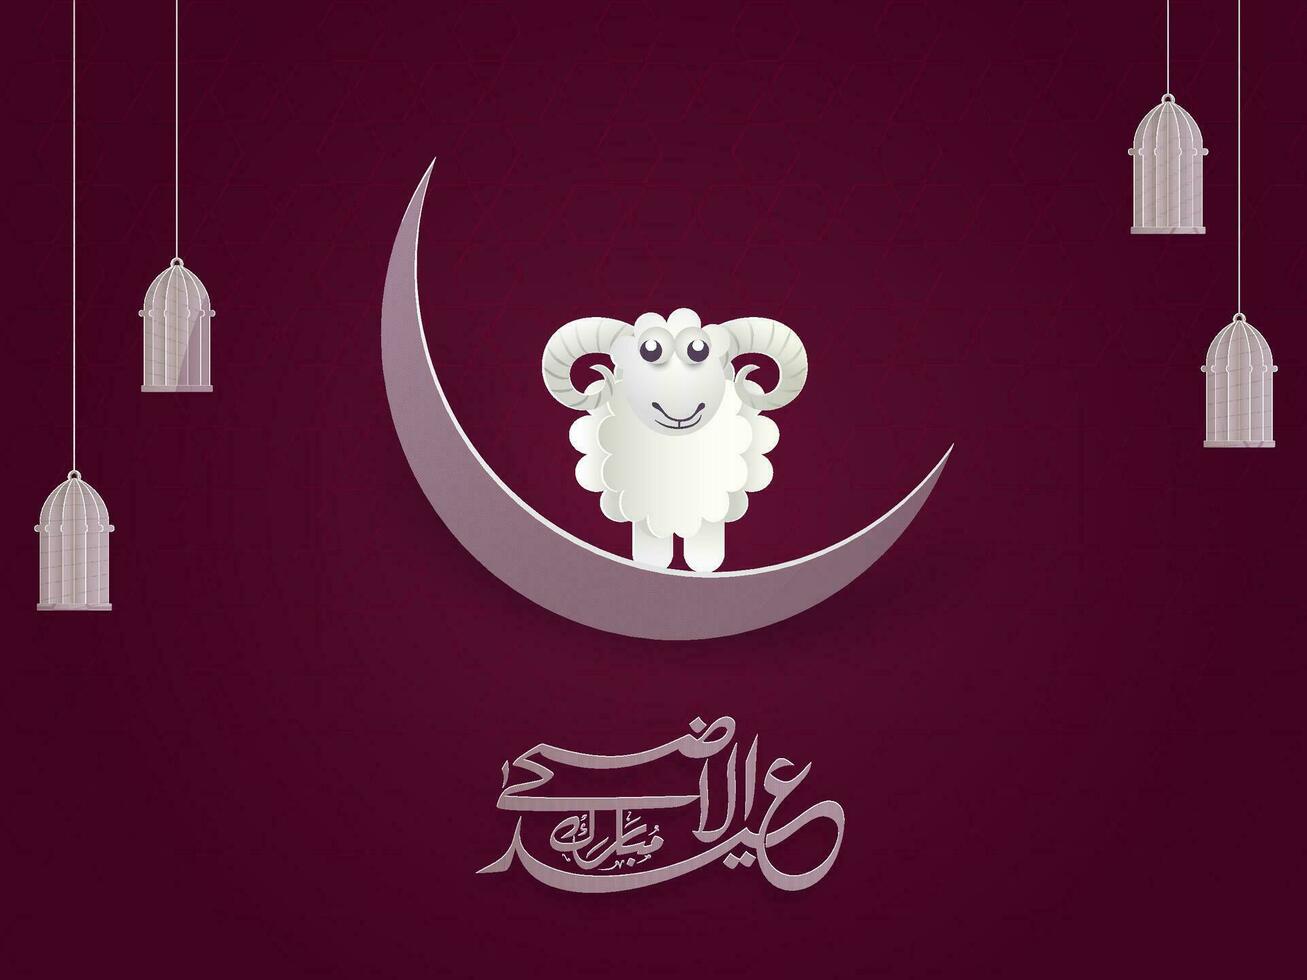 wit Arabisch schoonschrift van eid-ul-adha mubarak festival van offer met papier-kunst illustratie van tekenfilm schapen staand Aan halve maan maan en hangende lampen versierd donker roze achtergrond. vector